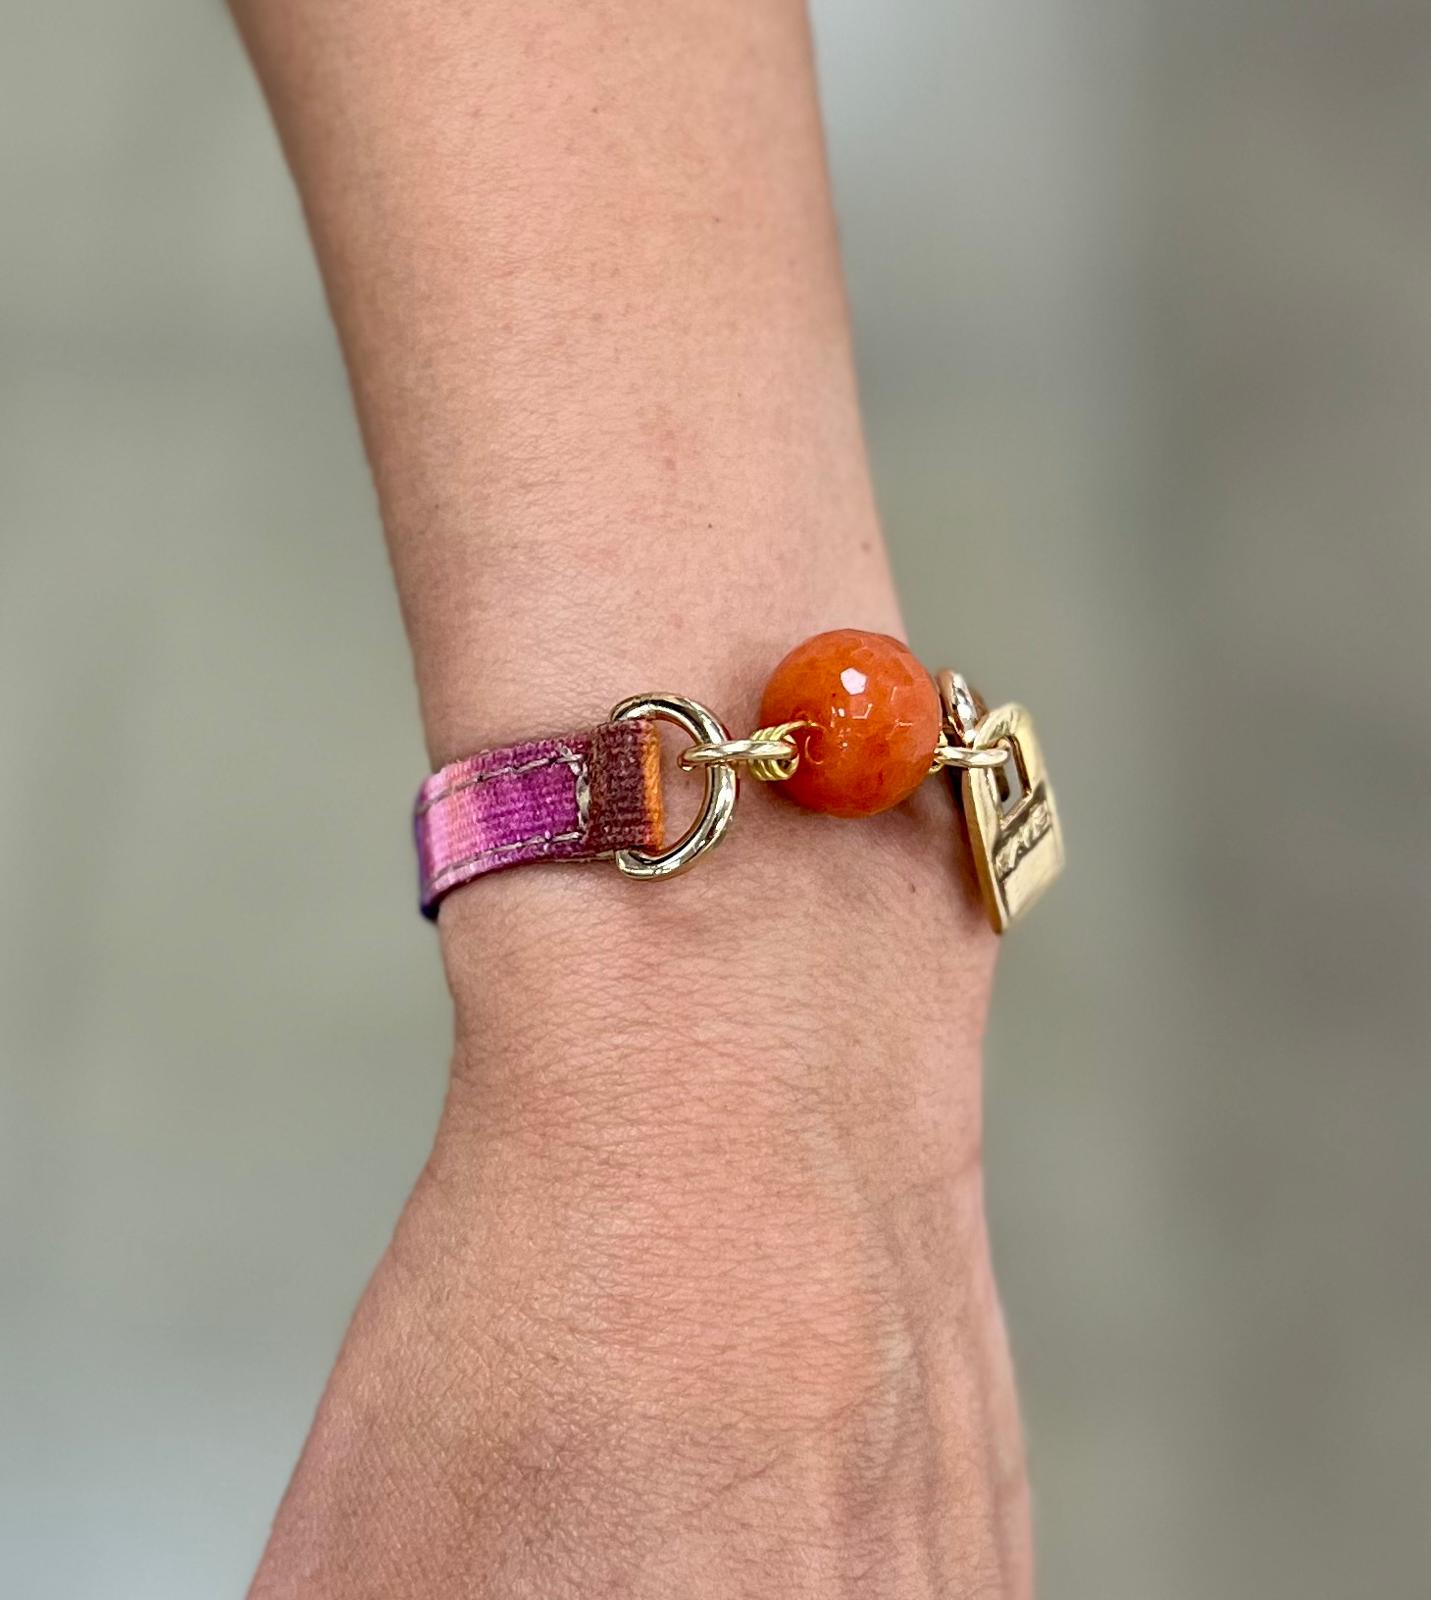 Camel Leather & Colorful Striped Fabric Band Bracelet | LALÉ Bracelets - LALEBRACELETS